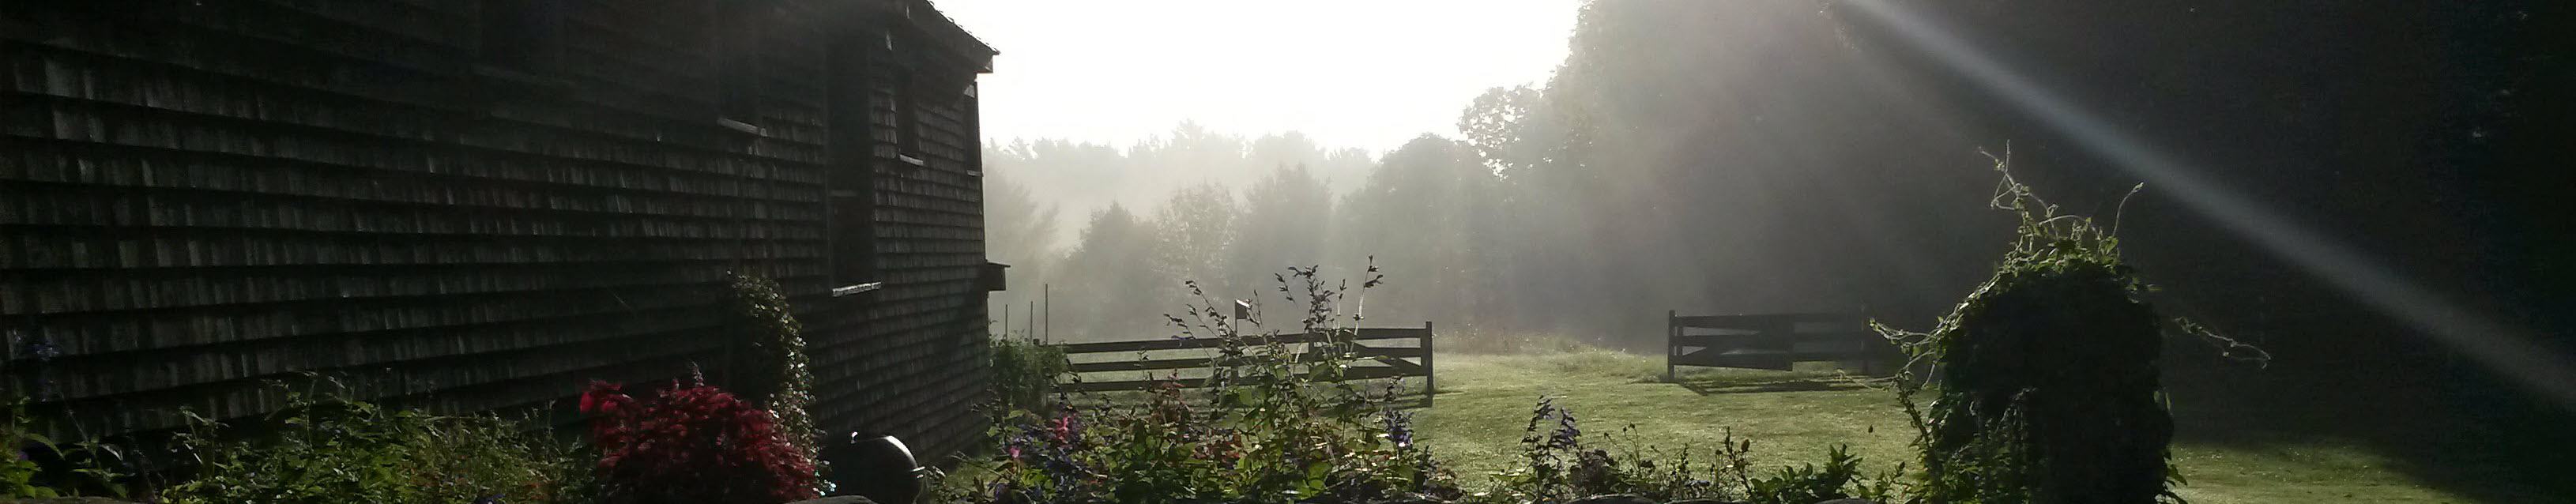 backyard fog